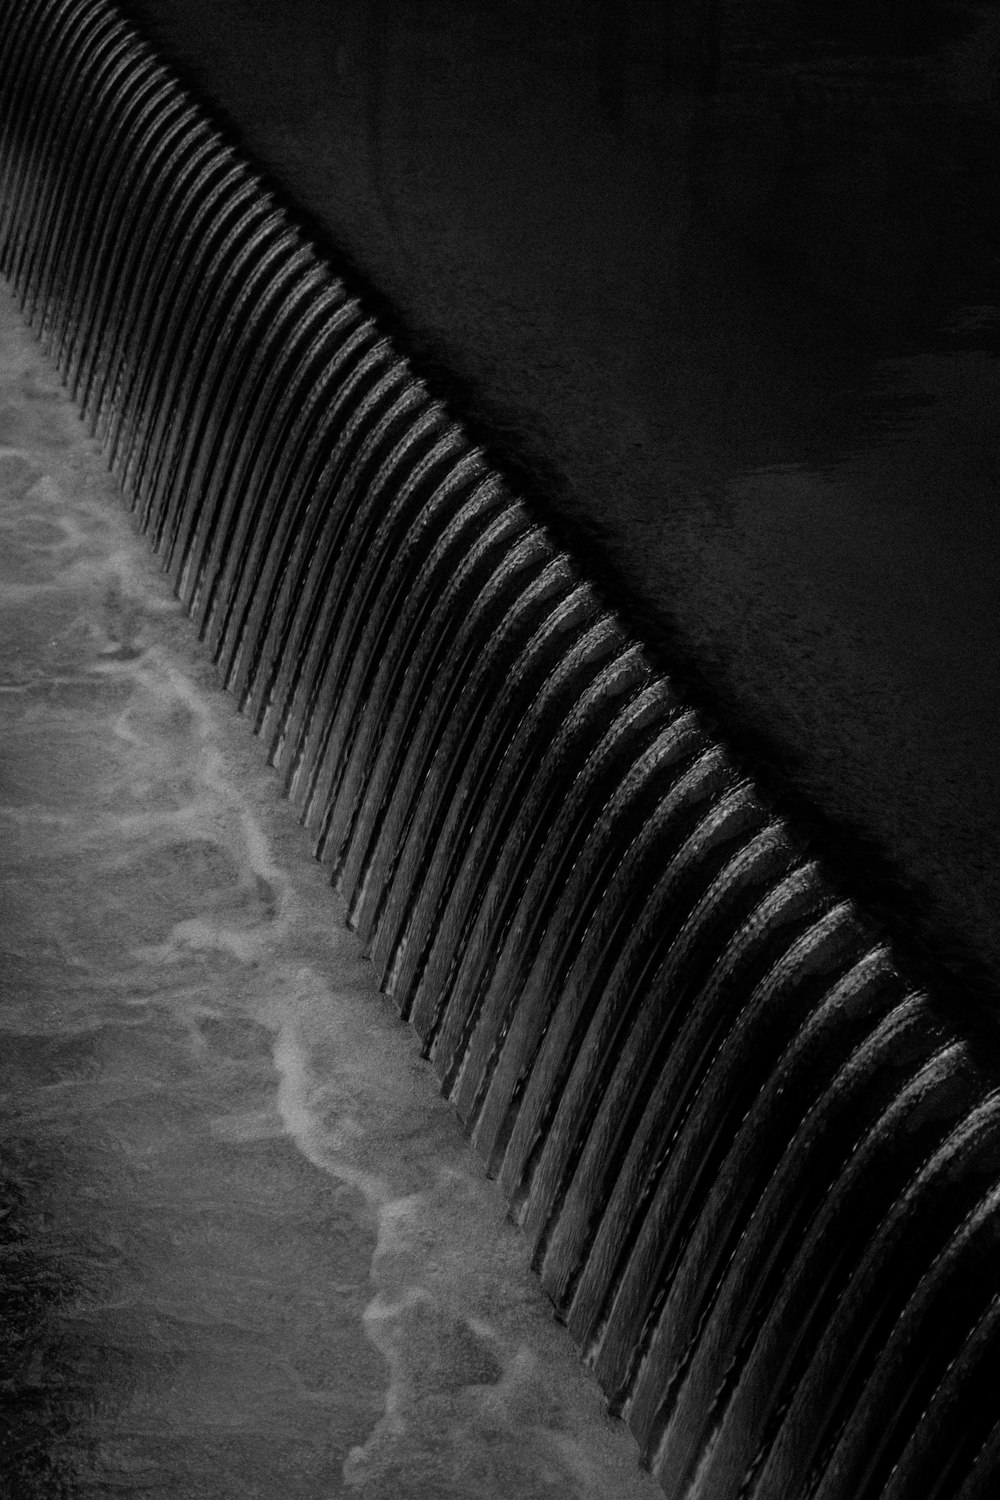 벽 위로 흐르는 물의 흑백 사진